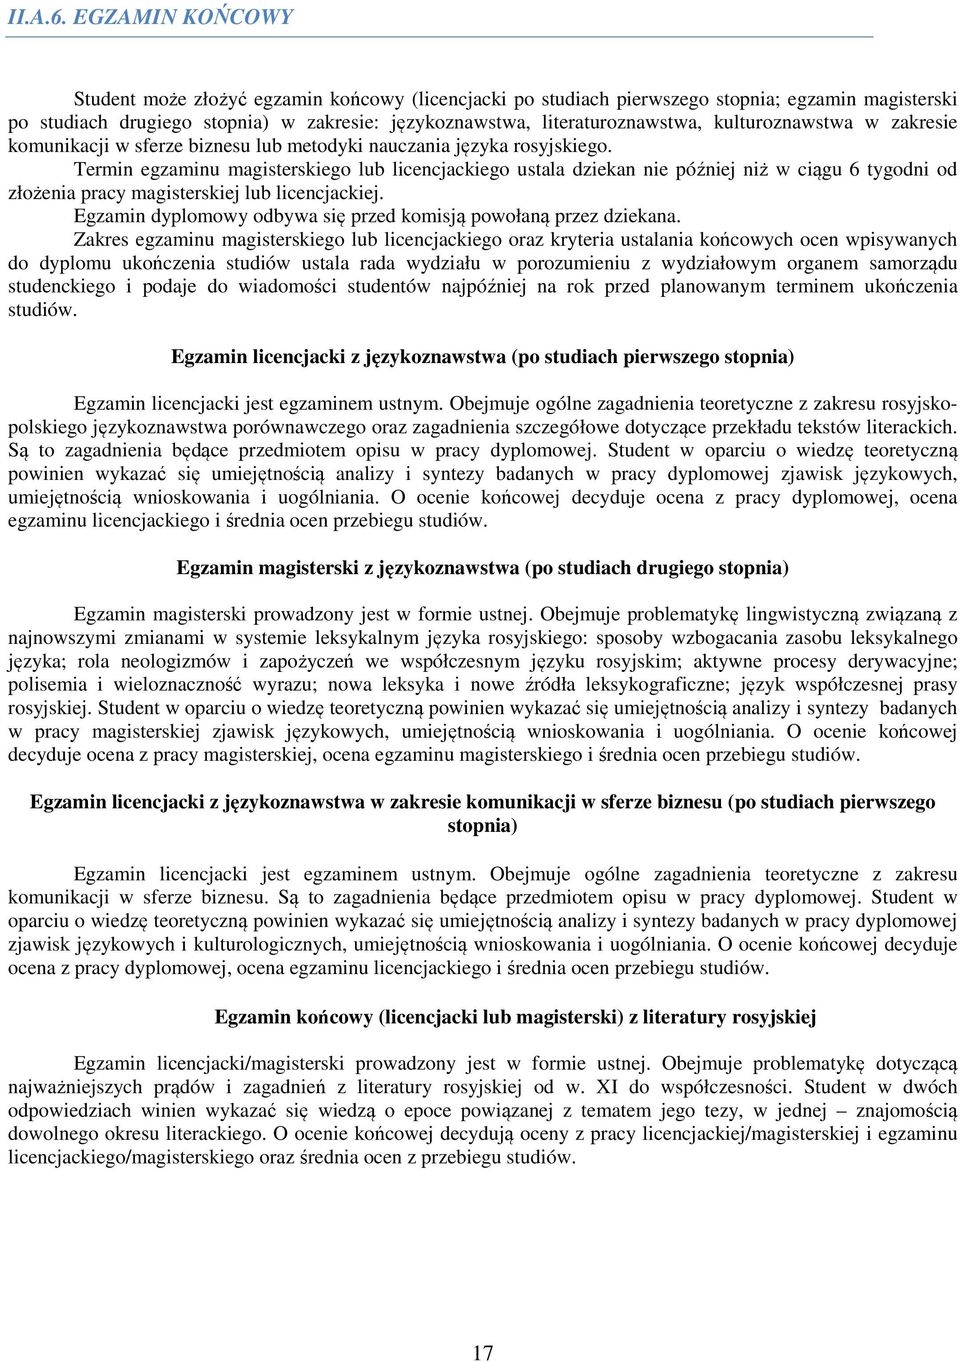 kulturoznawstwa w zakresie komunikacji w sferze biznesu lub metodyki nauczania języka rosyjskiego.